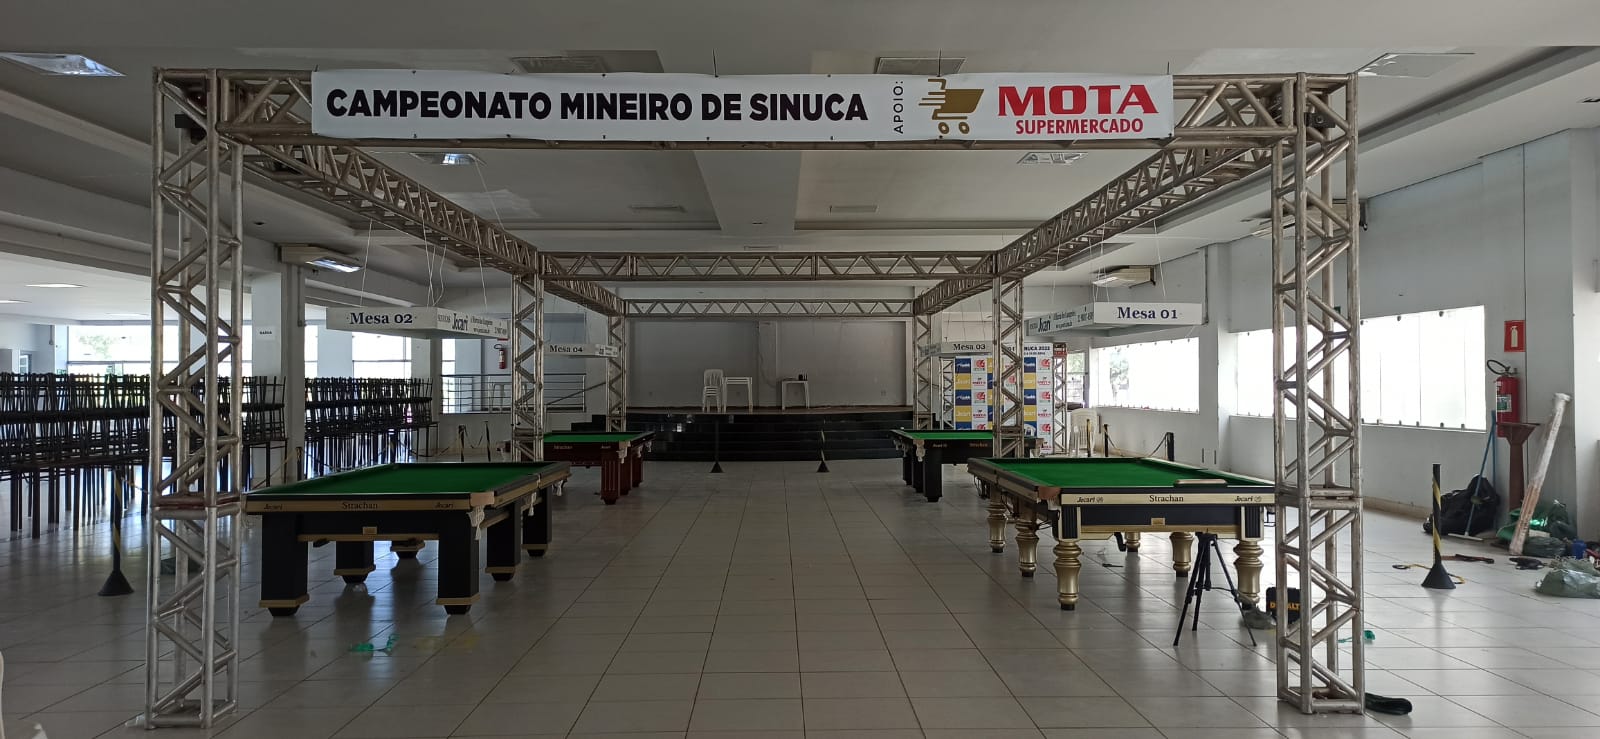 Etapa Montes Claros do Campeonato Mineiro de Sinuca 2022